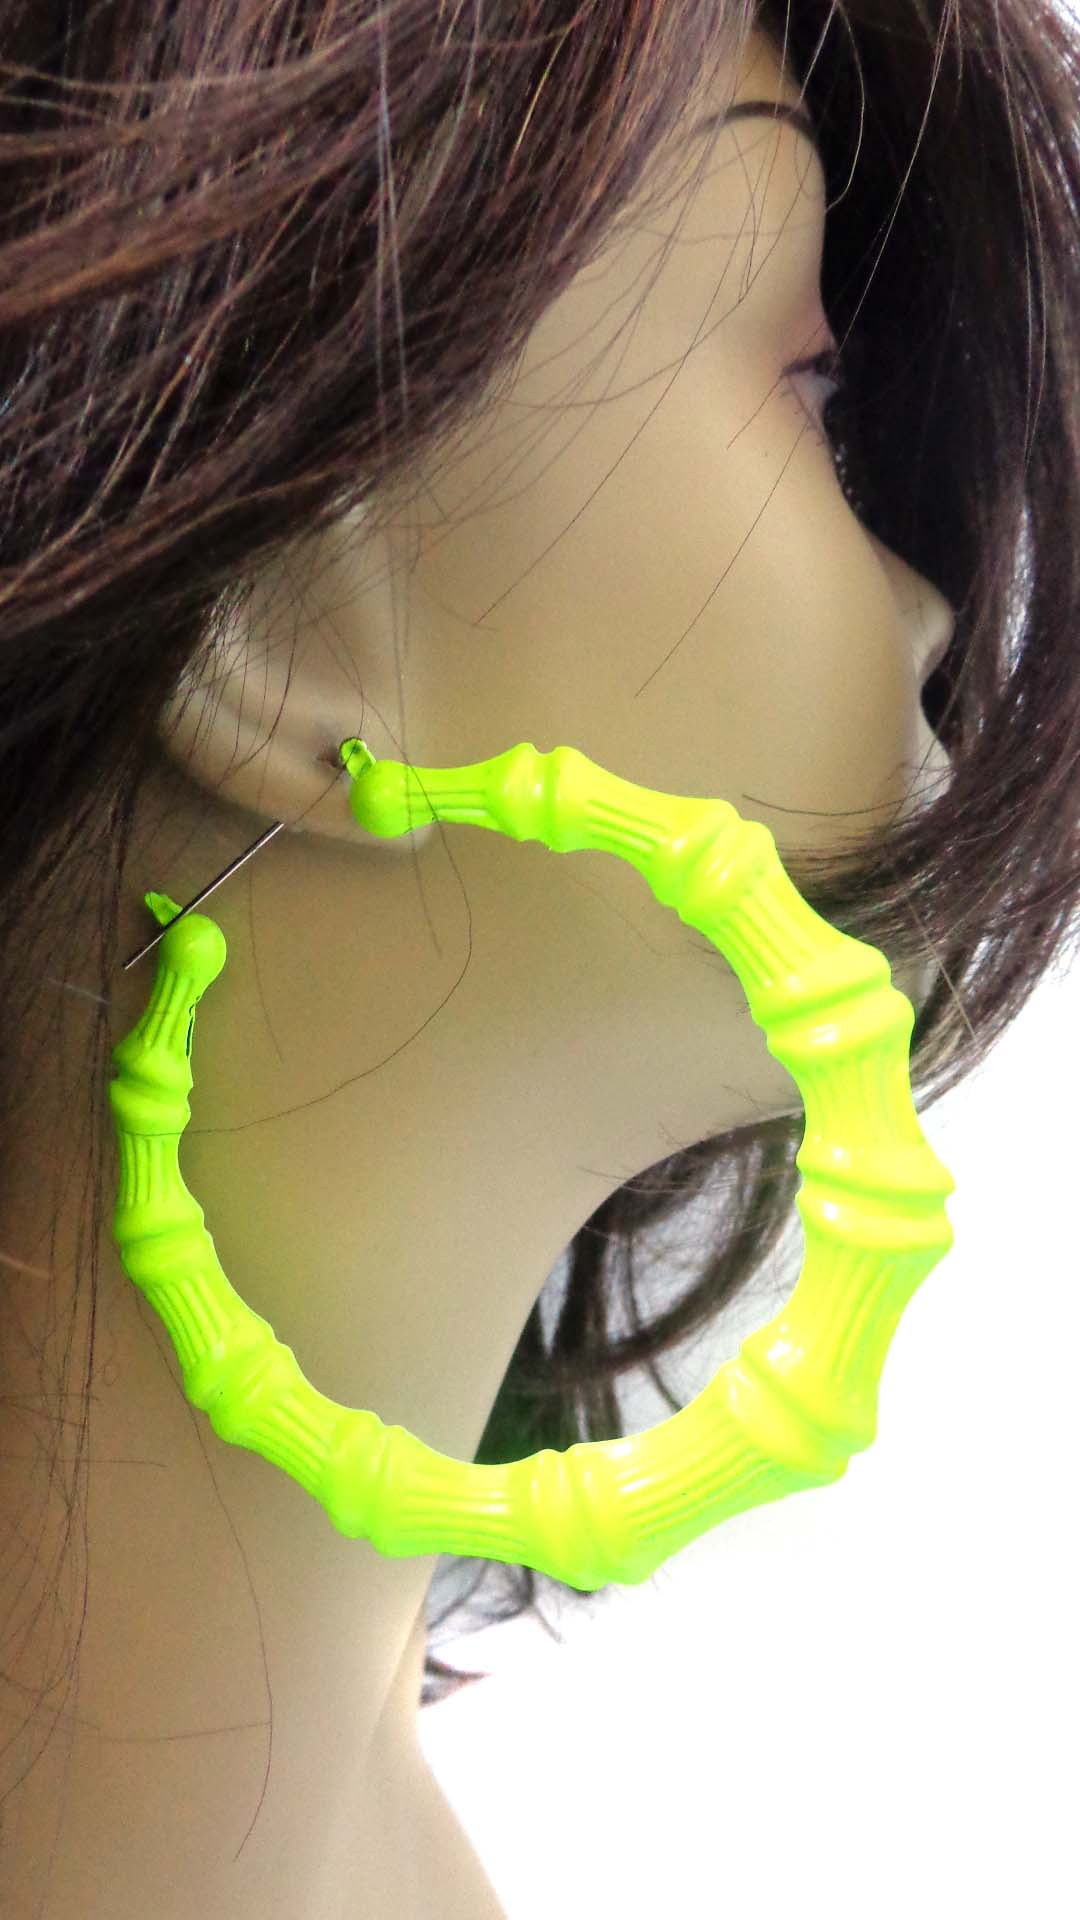 50mm Large Neon Yellow Wide Hoop Earrings